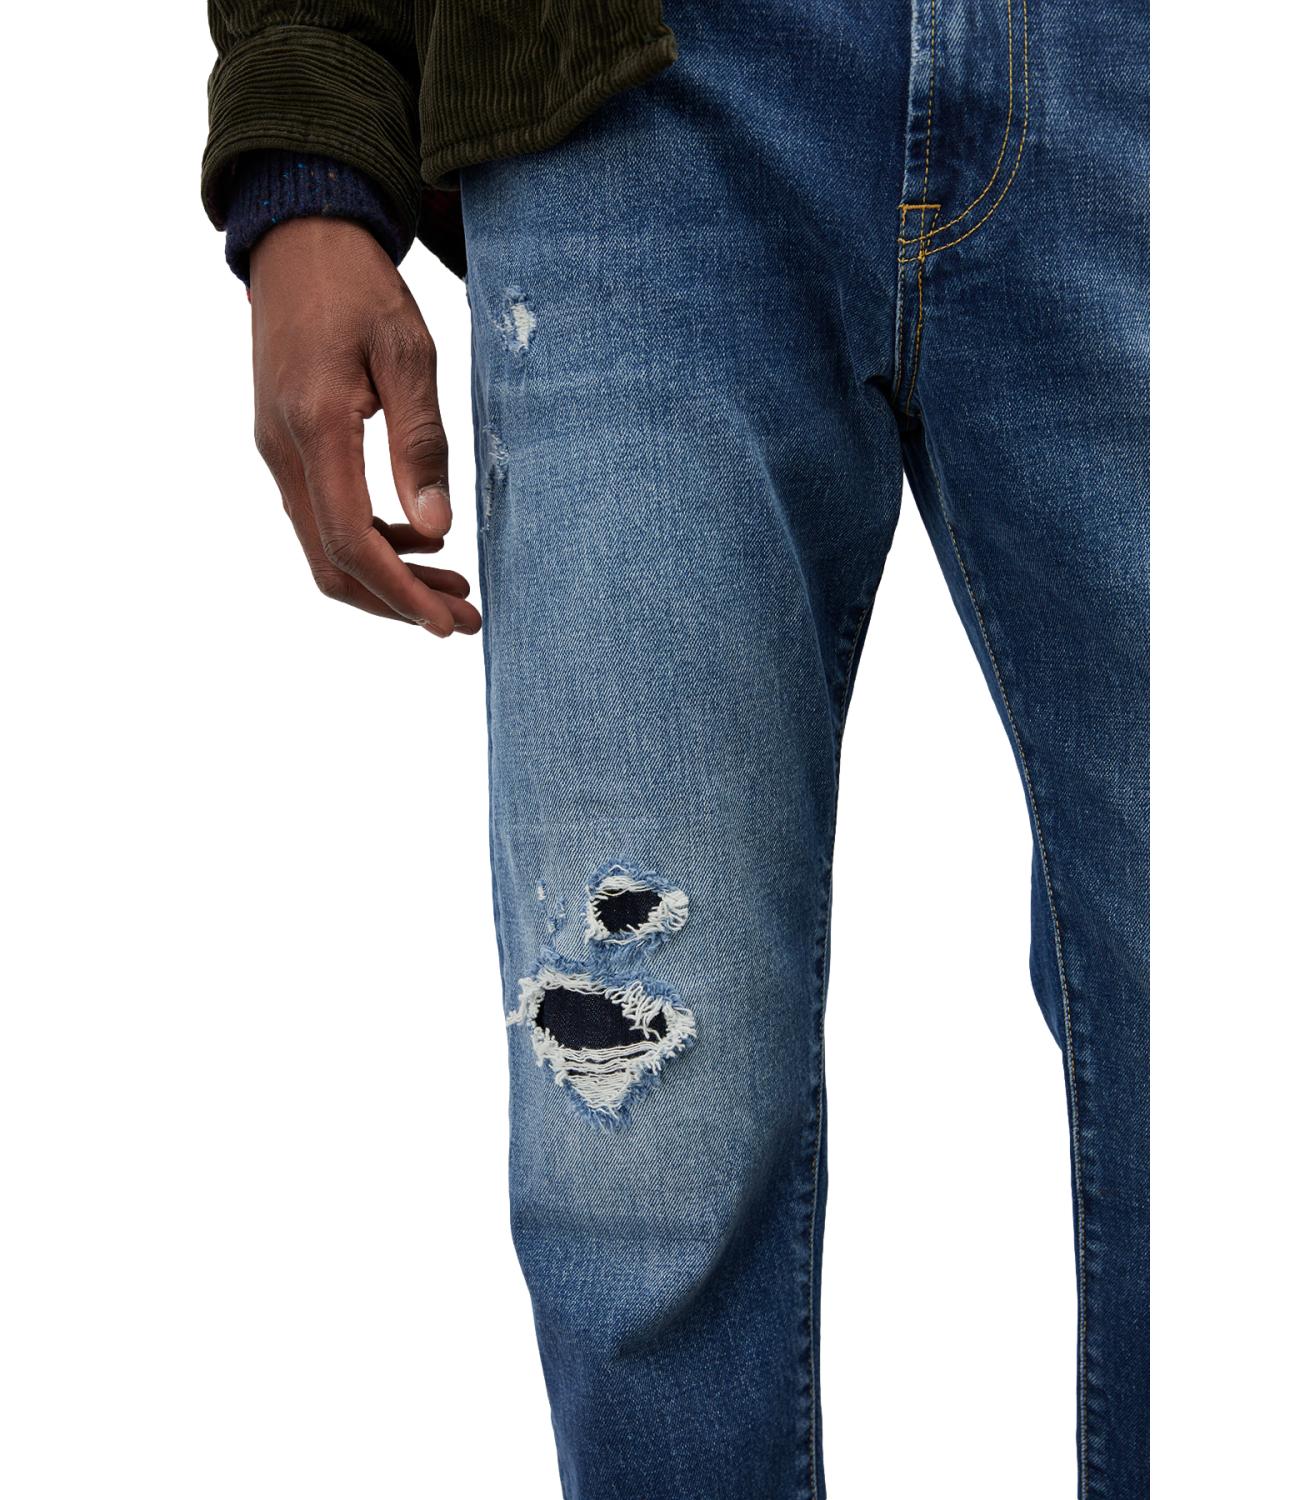 Roy Roger's Jeans uomo Empire State denim slavato con strappi